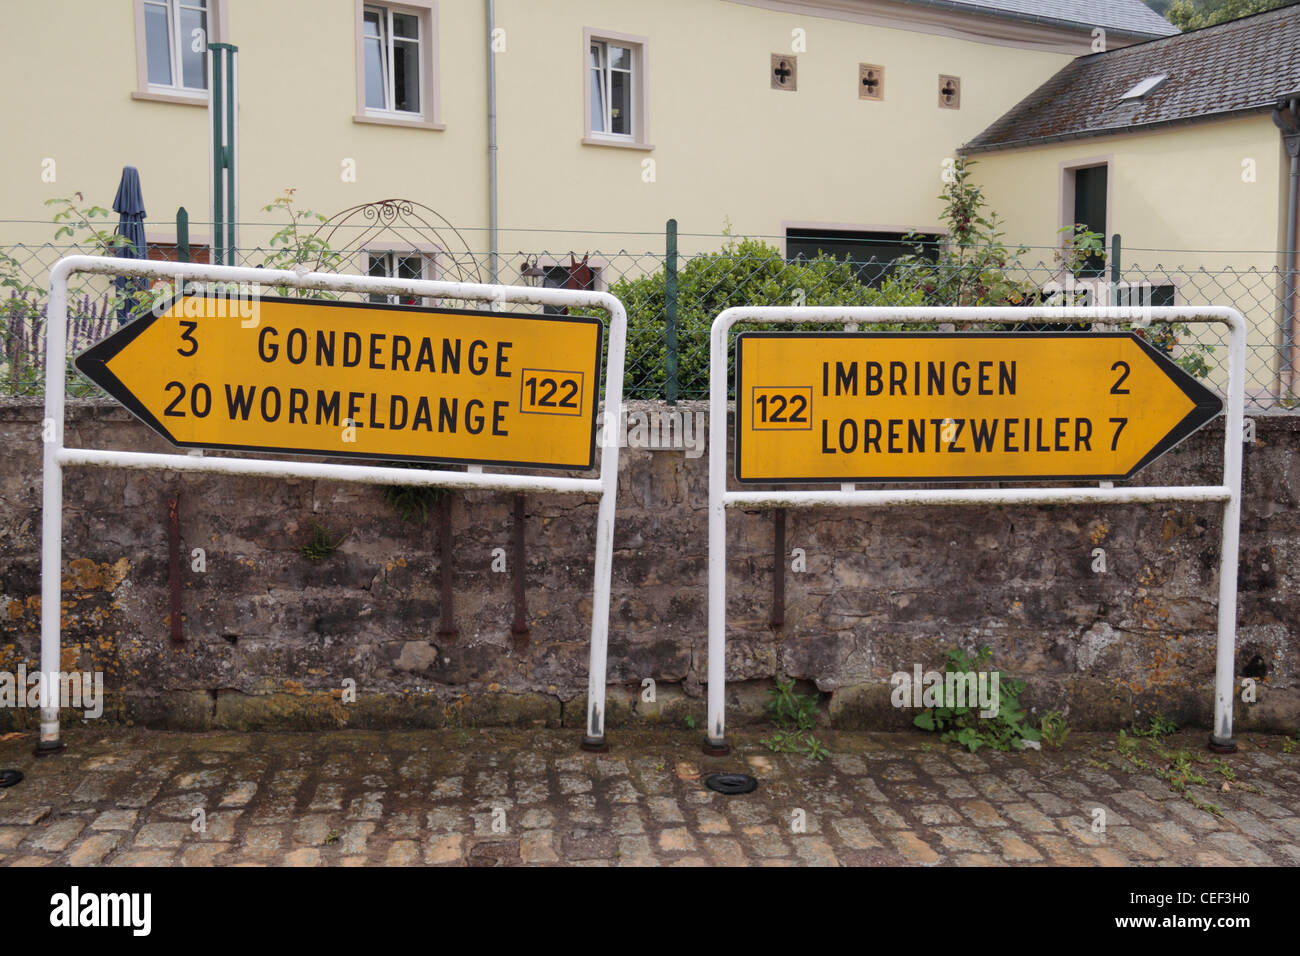 HELMDANGE: Dorfstrasse/Eingang, Nick Bras (Lorentzweiler) - Auctions  Luxembourg